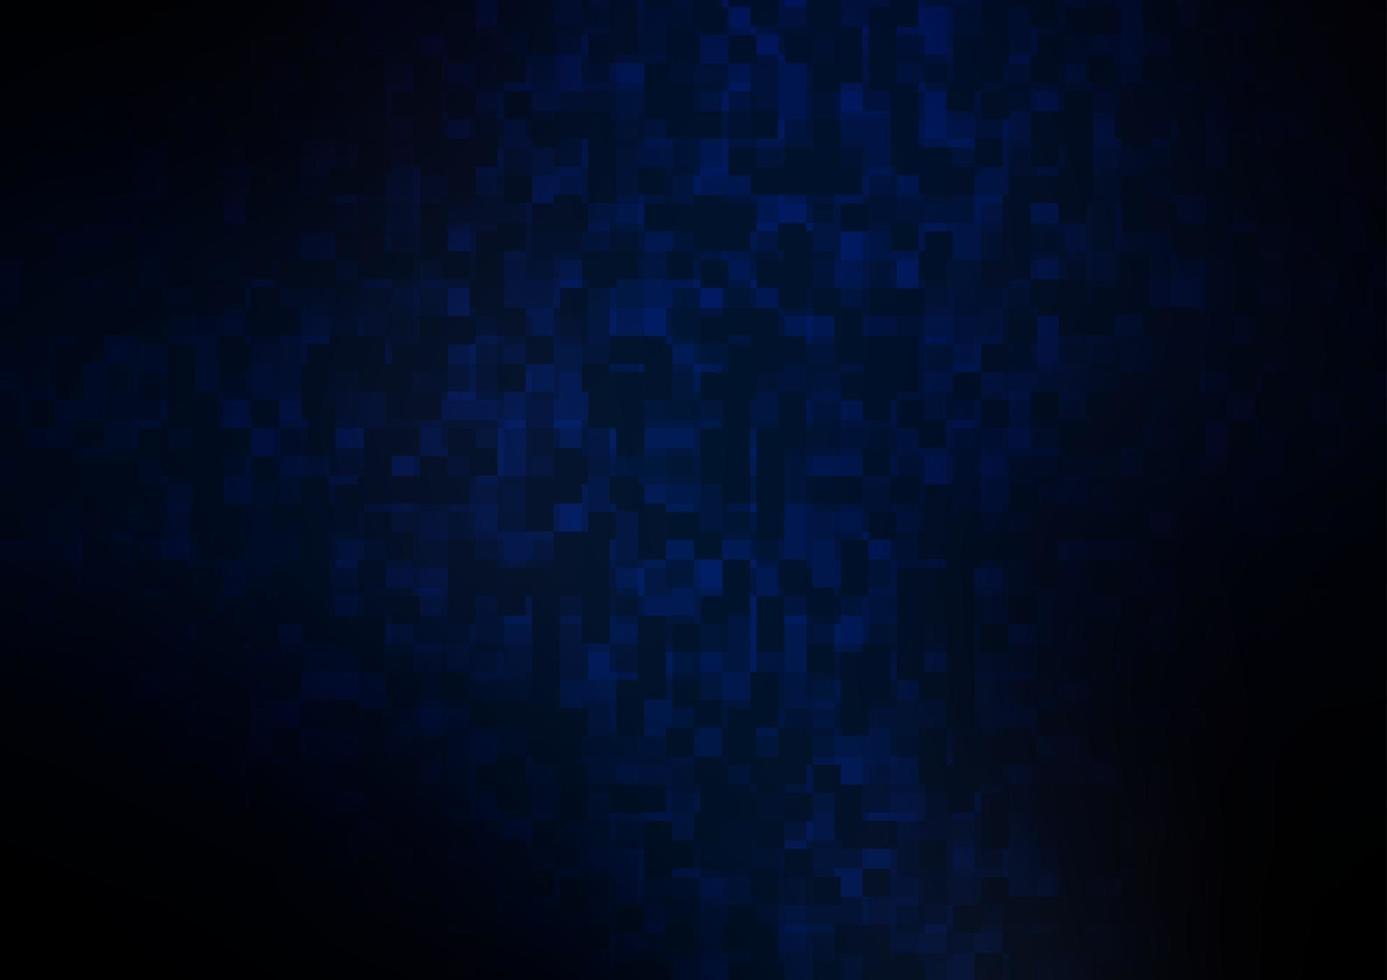 cenário de vetor azul escuro com retângulos, quadrados.